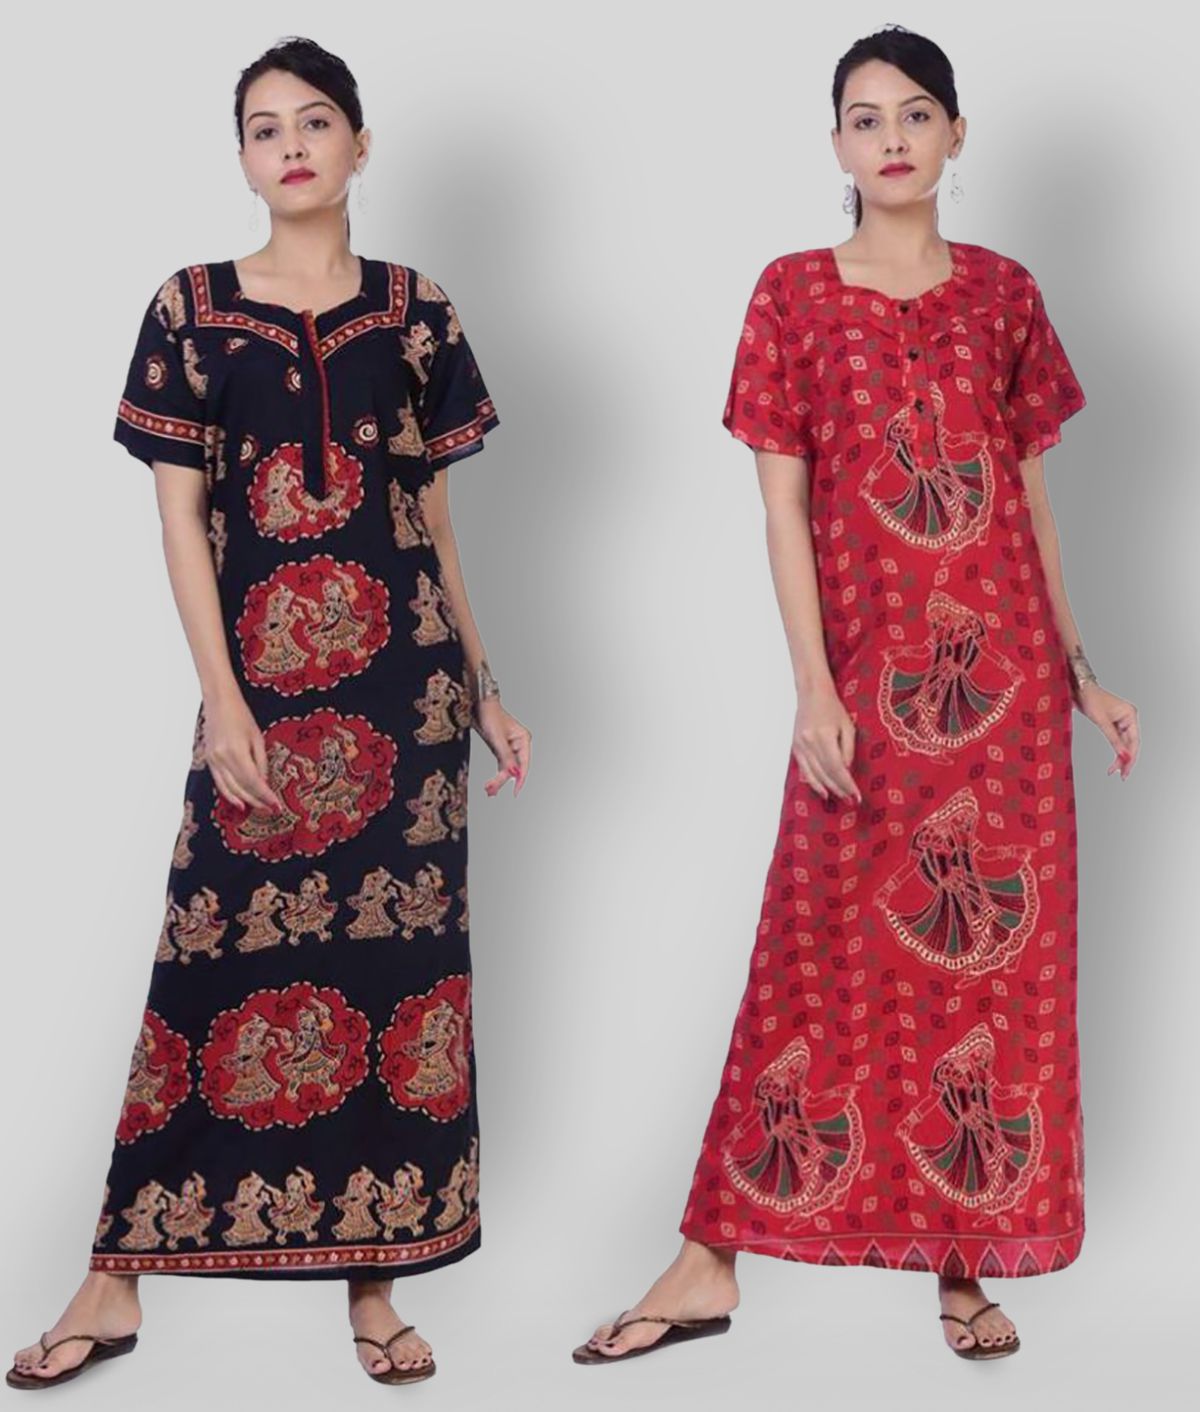     			Apratim - Multicolor Cotton Women's Nightwear Nighty & Night Gowns ( Pack of 2 )